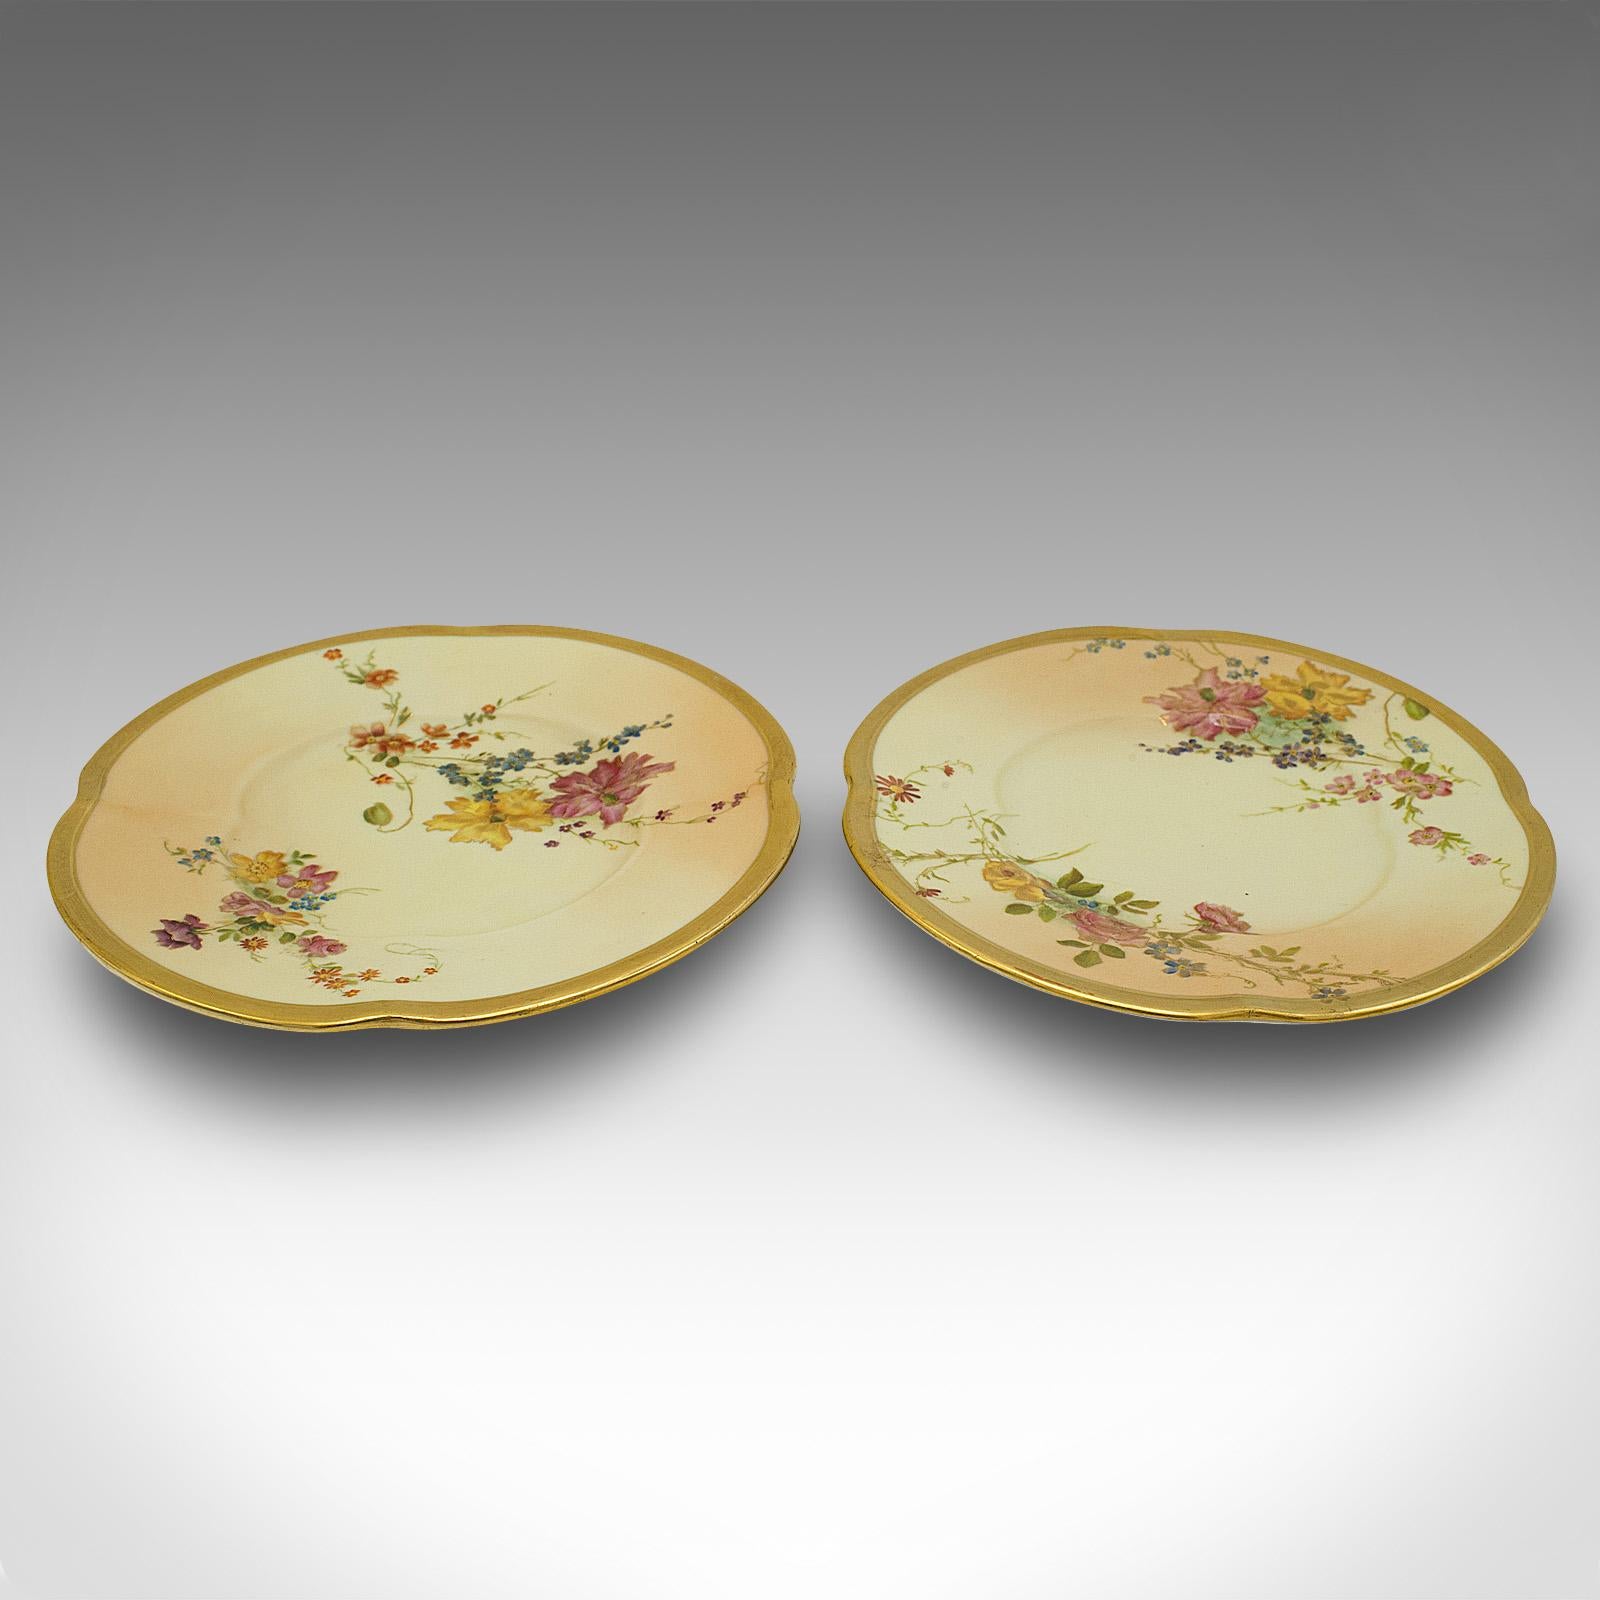 Il s'agit d'une paire d'assiettes latérales anciennes. Assiette à gâteau ou soucoupe décorative anglaise en céramique, datant de la fin de la période victorienne, vers 1900.

Charmantes céramiques victoriennes agréablement décorées.
Présente une